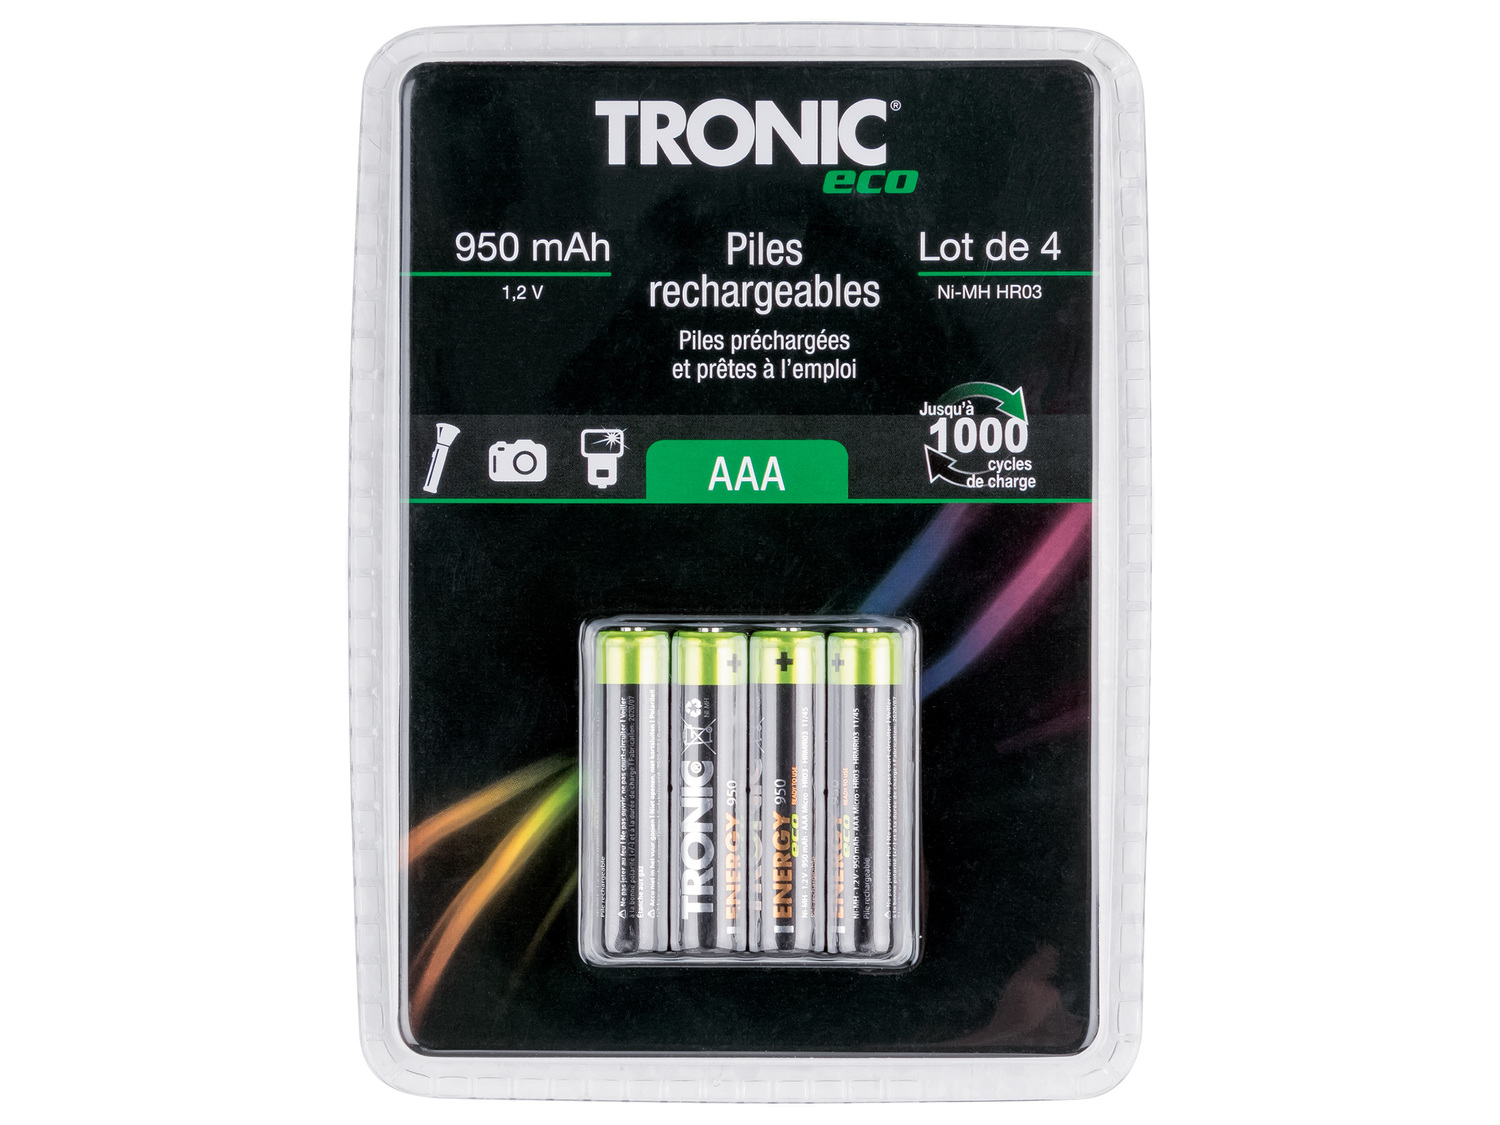 Piles rechargeables Tronic, le prix 3.99 € 
- Jusqu’à 1 000 cycles de charge
- ...